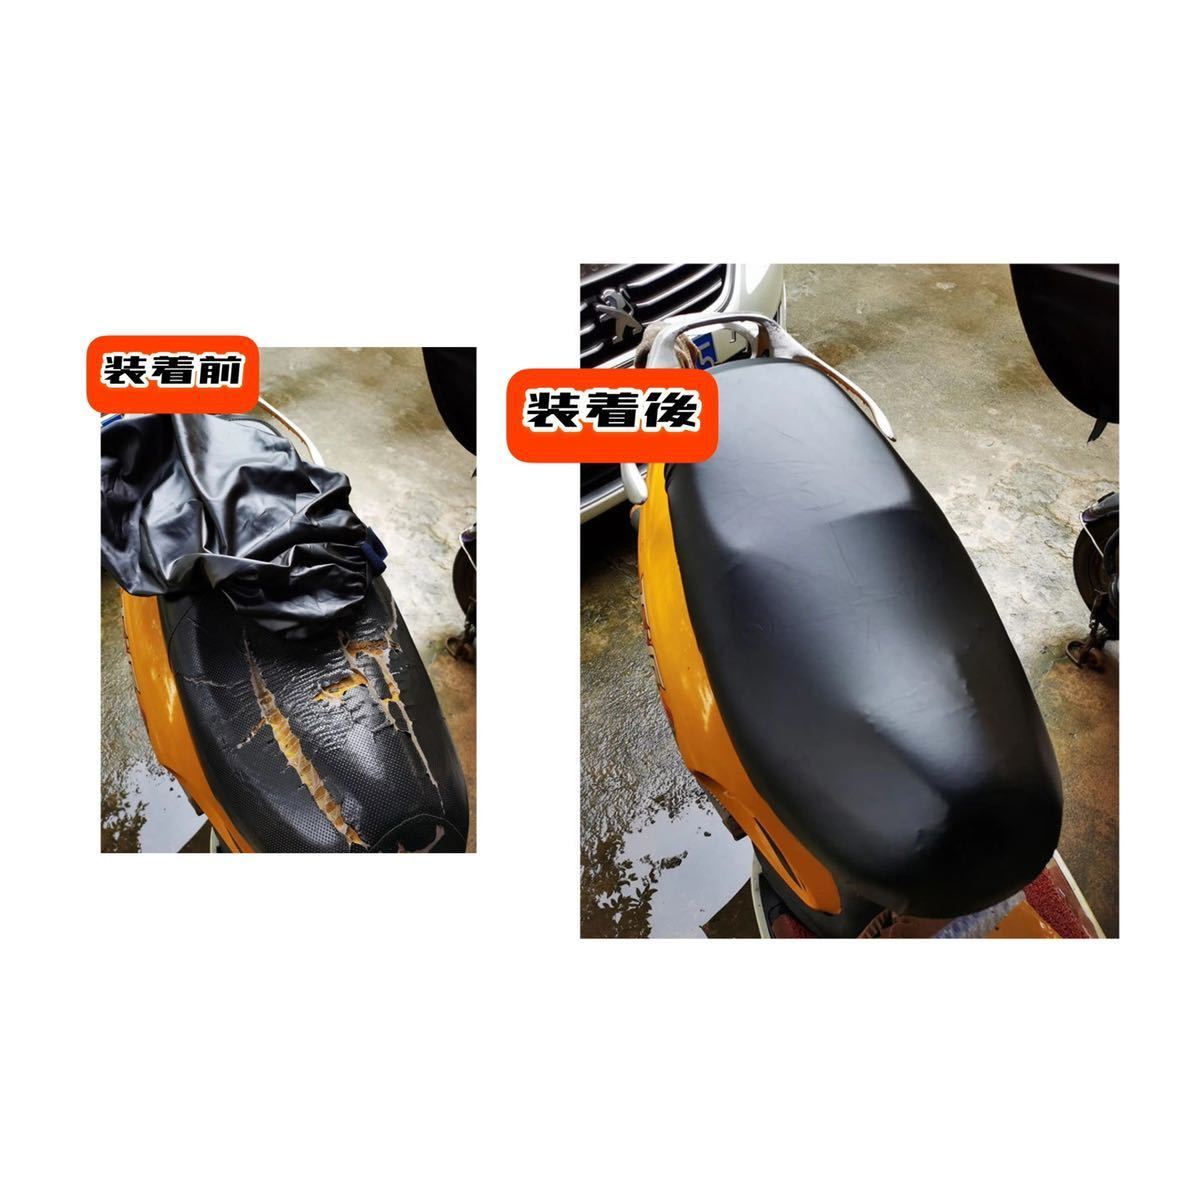 汎用 スクーター 原付 バイク シートカバー シート 補修 防水加工 伸縮素材 取付簡単 合皮 ブラック 耐摩擦 耐久性 オートバイ 張り替え_画像3